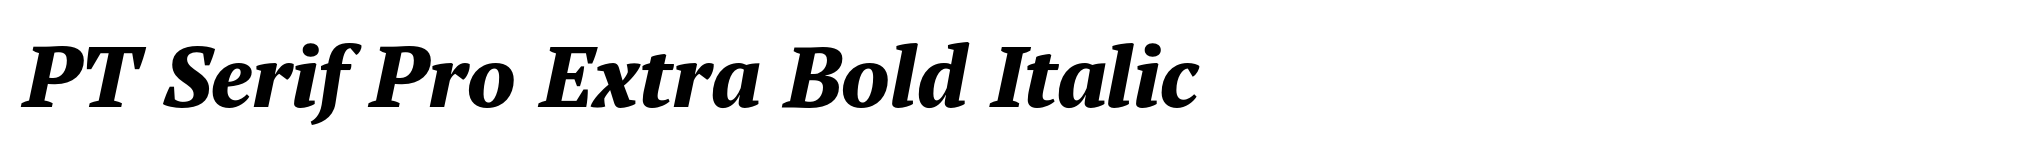 PT Serif Pro Extra Bold Italic image